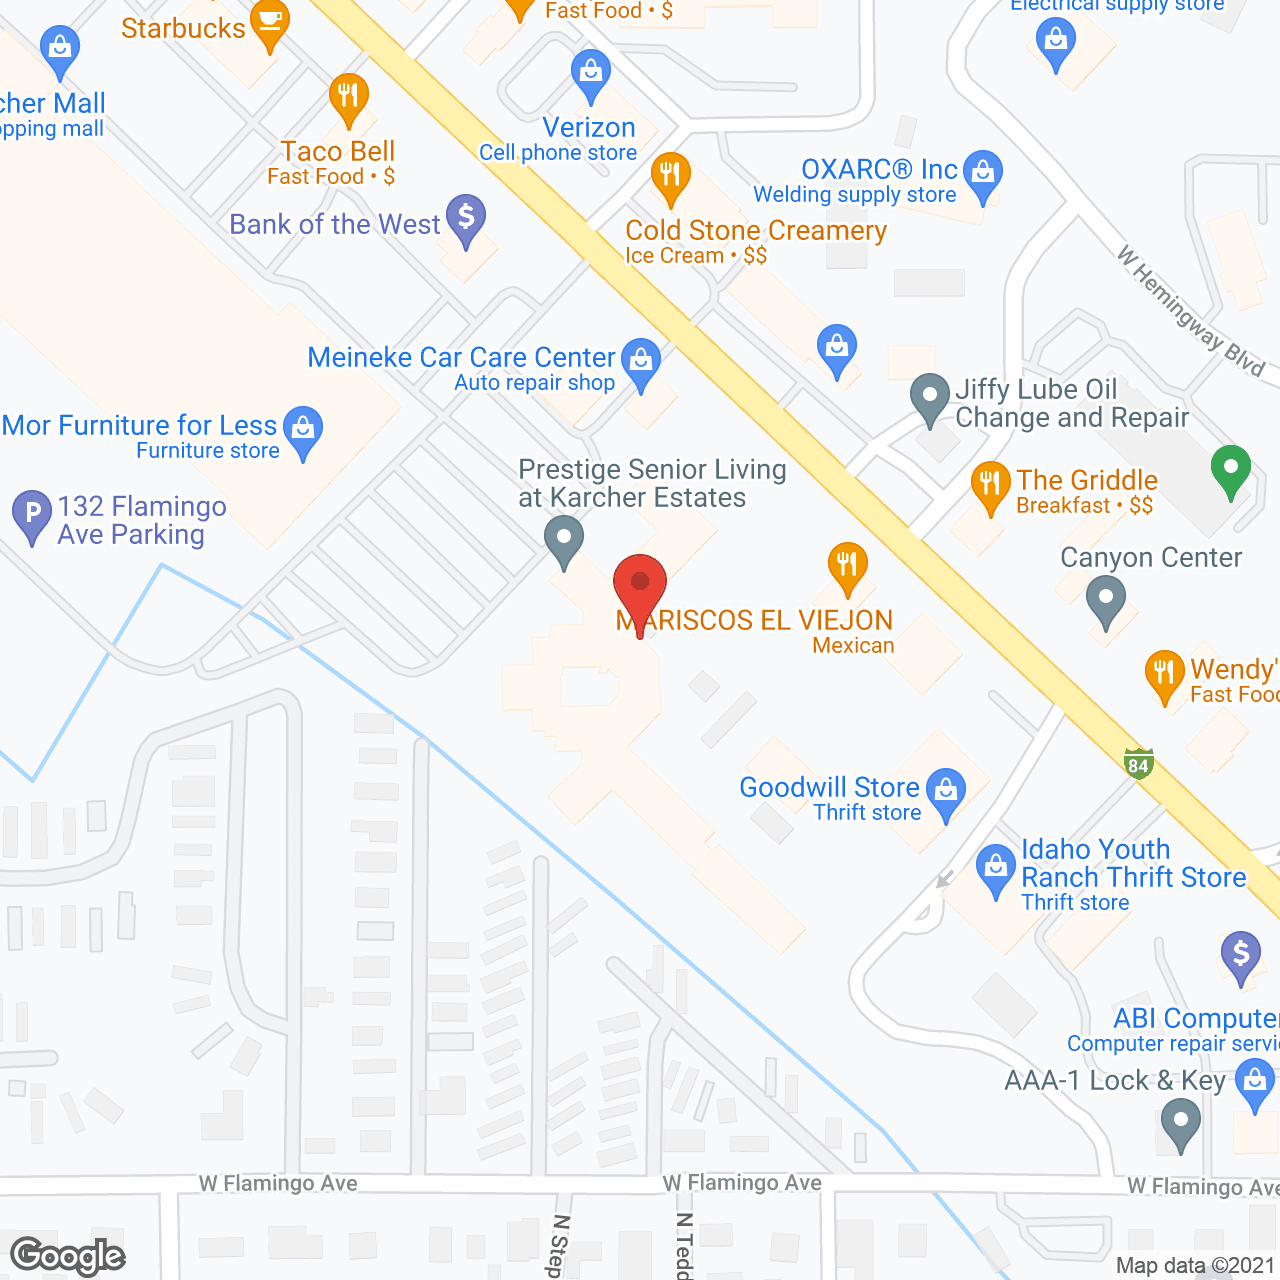 Karcher Estates in google map